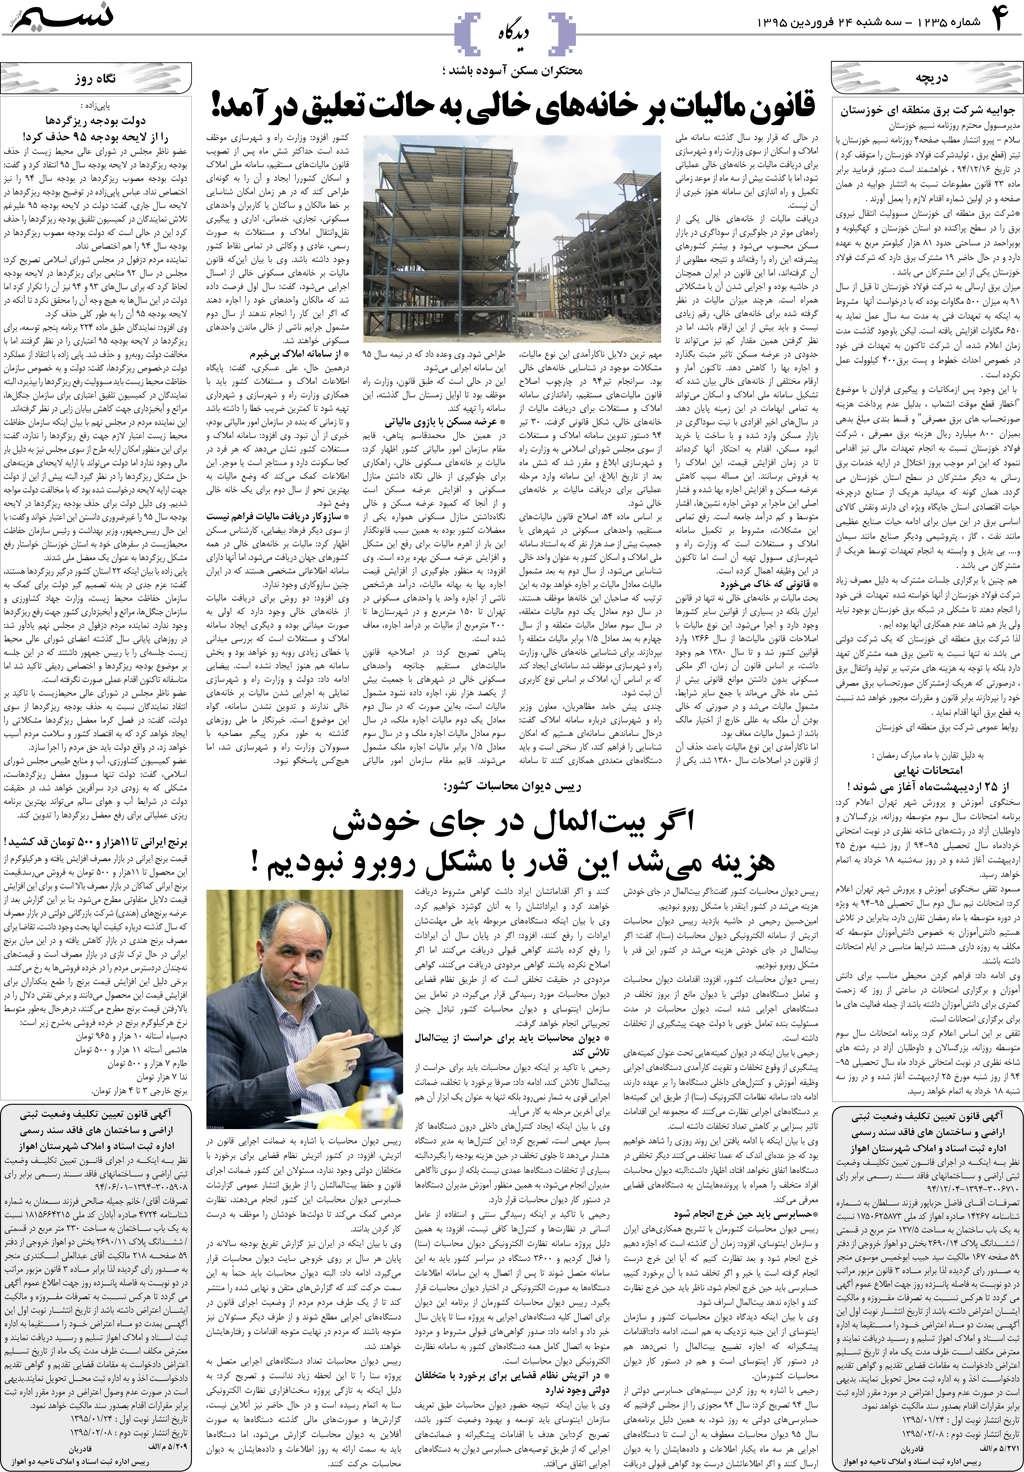 صفحه دیدگاه روزنامه نسیم شماره 1235